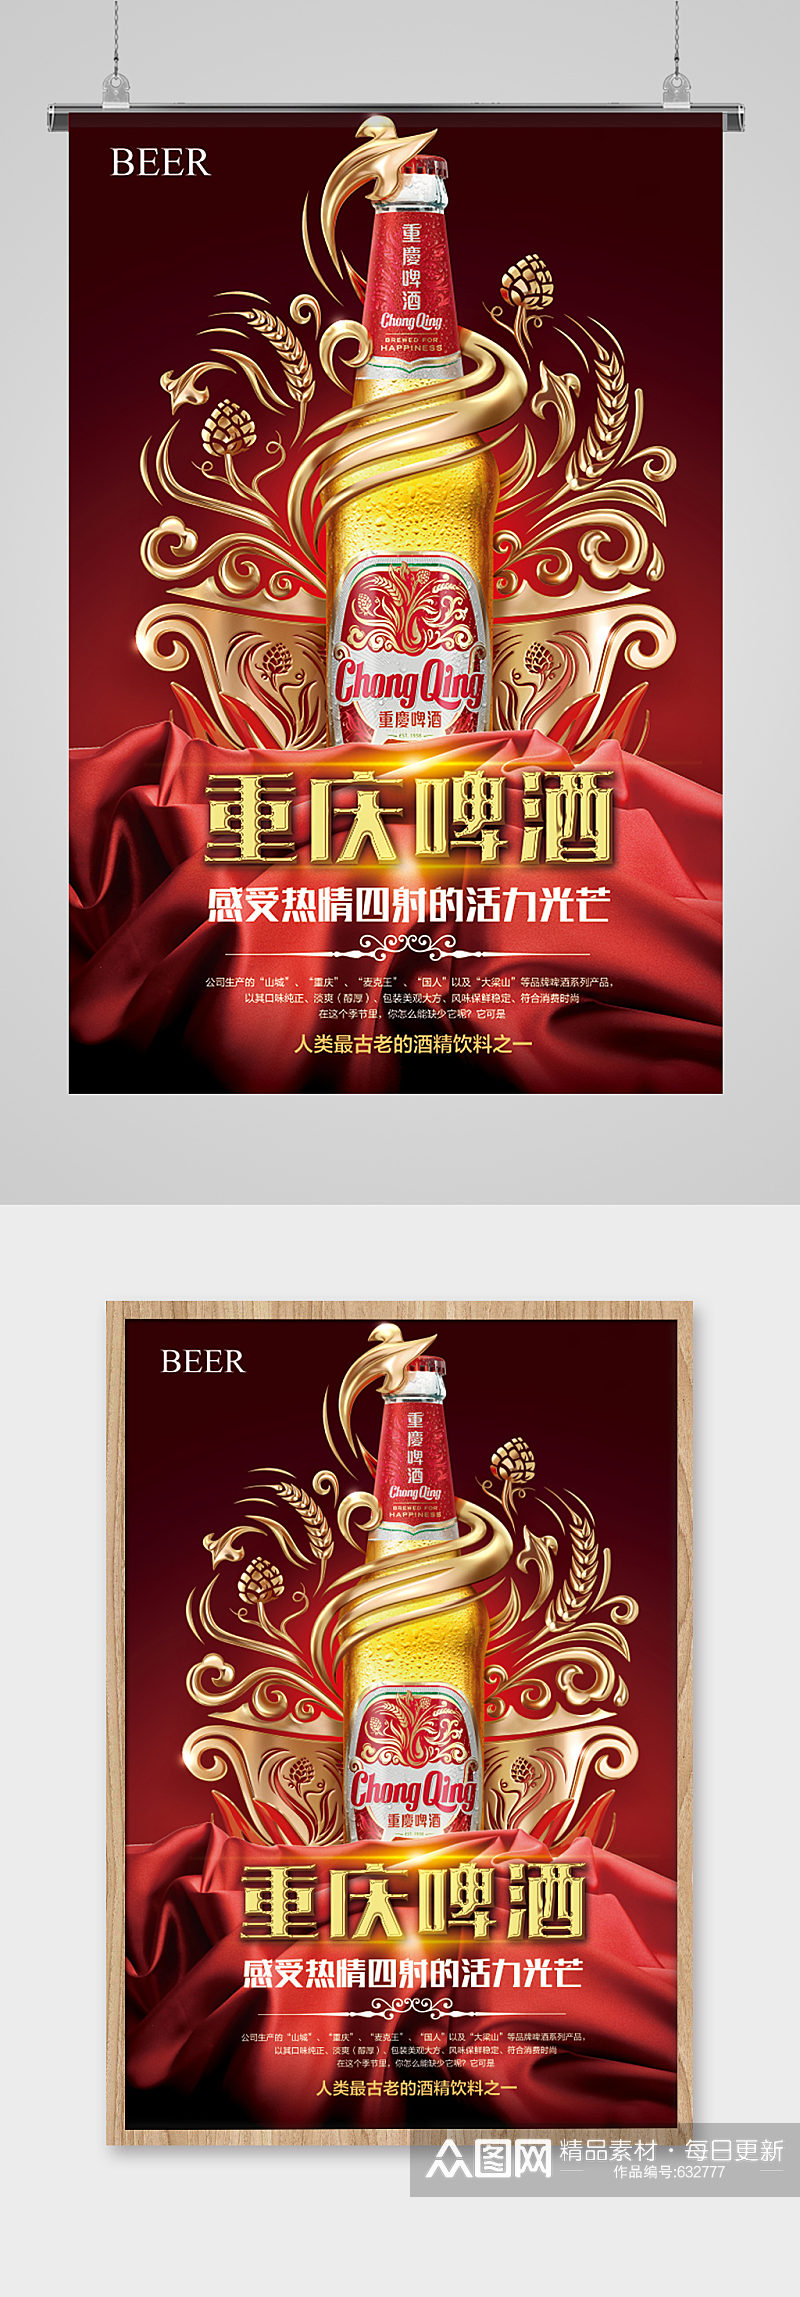 重庆啤酒宣传海报素材